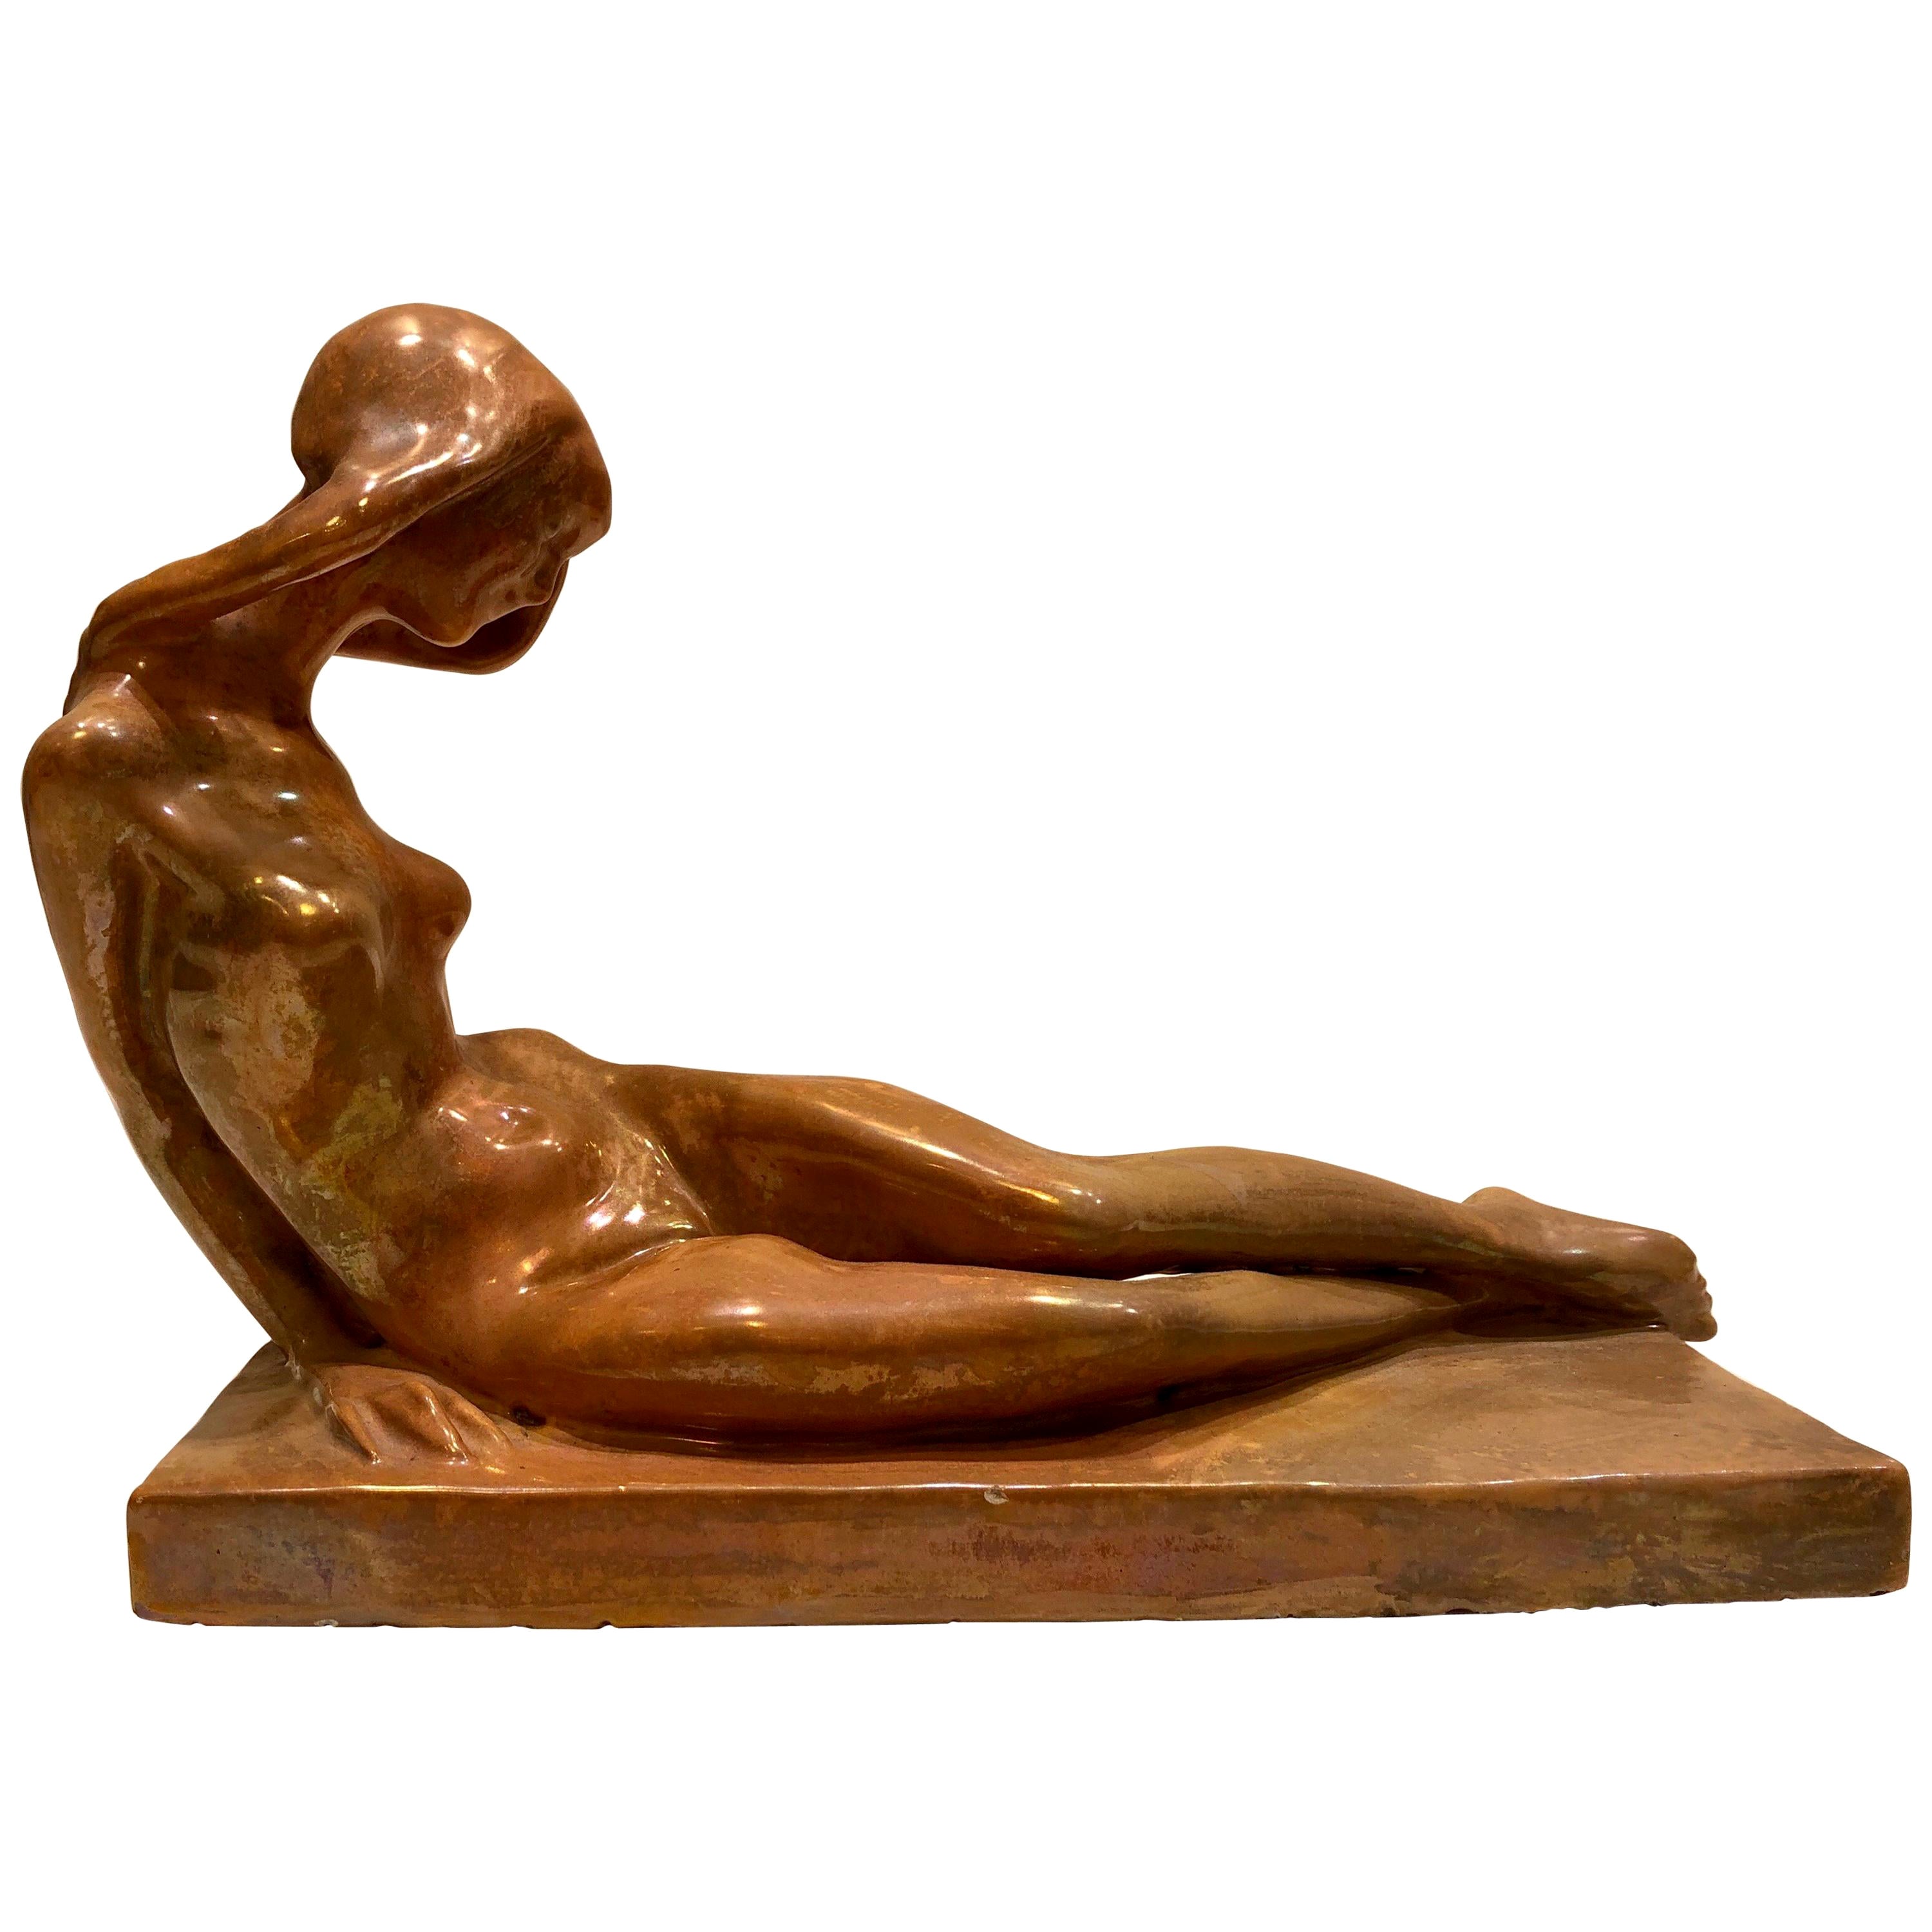 Italienische Mazzolani-Keramik-Skulptur einer nackten Frau, signiert, 1920er Jahre